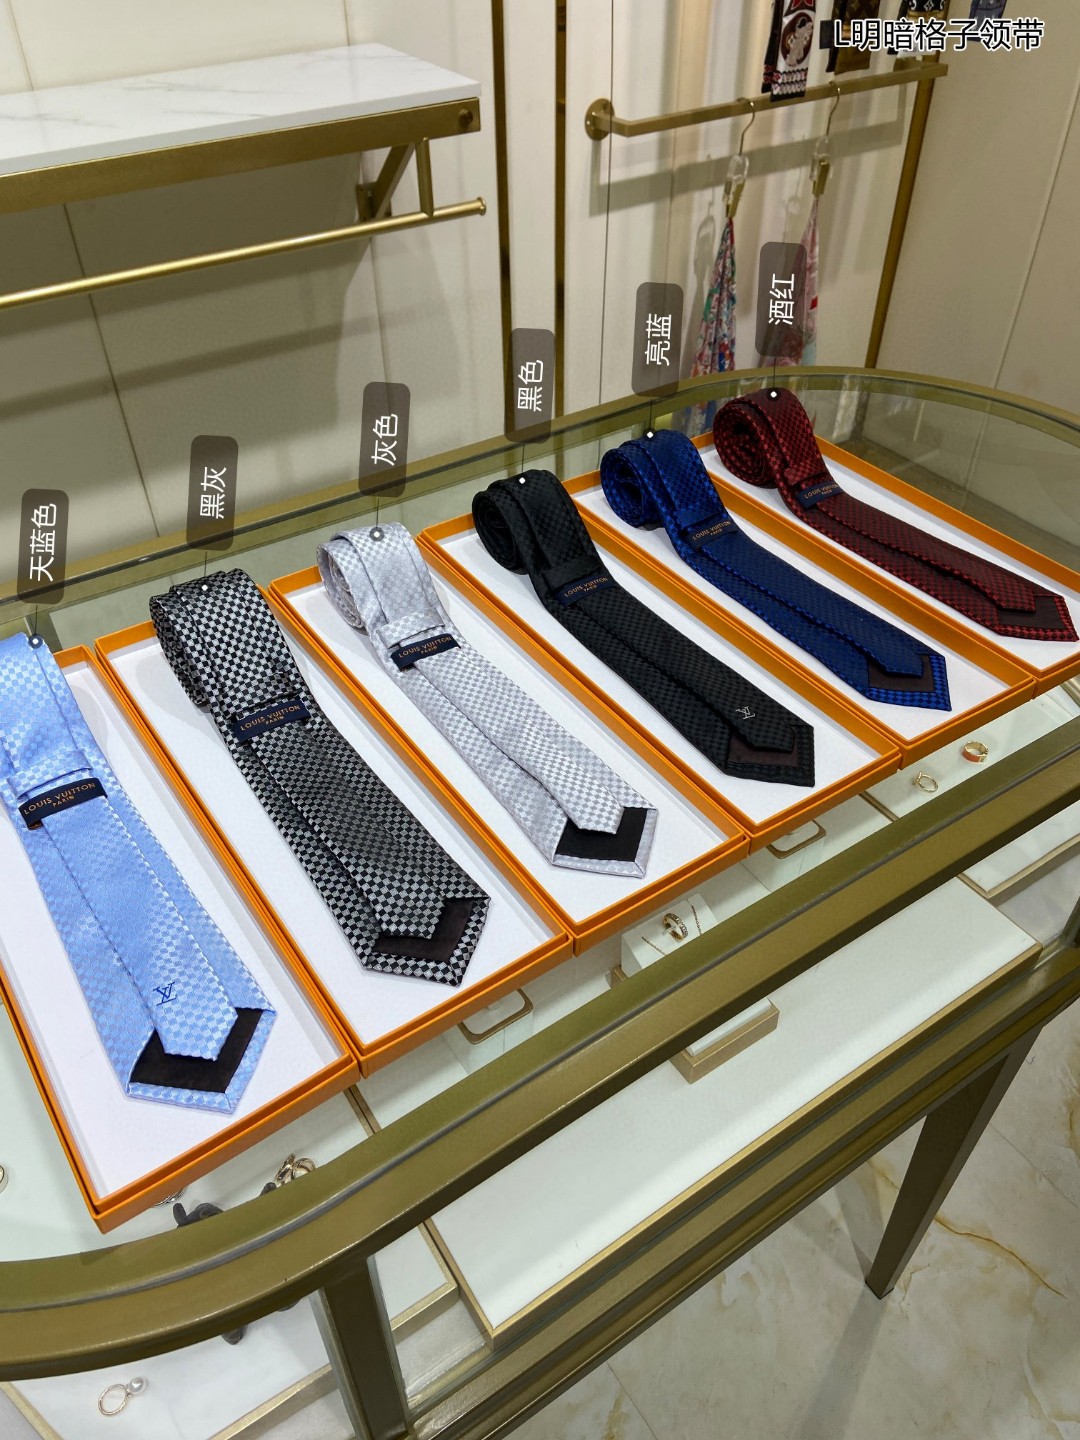 专柜同步男士领带系列L明暗格子领带稀有展现精湛手工与时尚优雅的理想选择这款领带将标志性的Damier图案